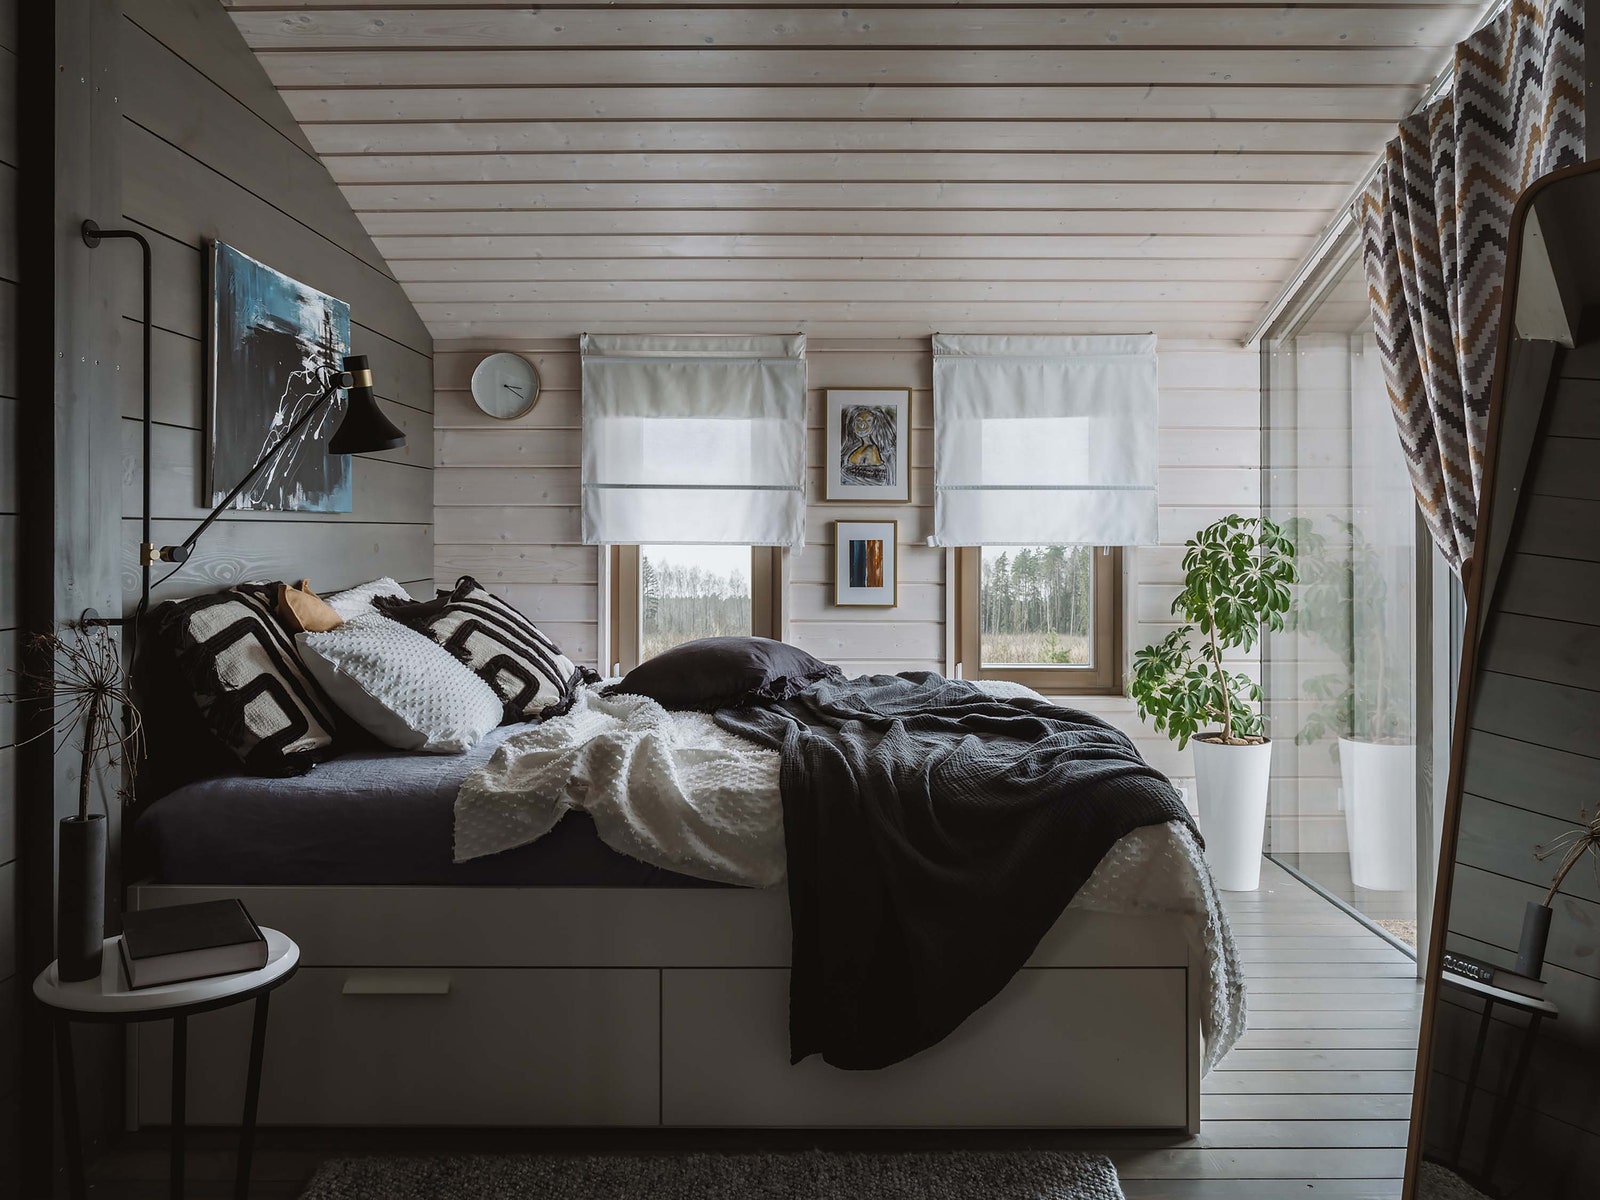 Спальня. Кровать IKEA столик Cosmorelax Interior светильник La Redoute постельное белье HampM Home ваза из бутика Lulu...